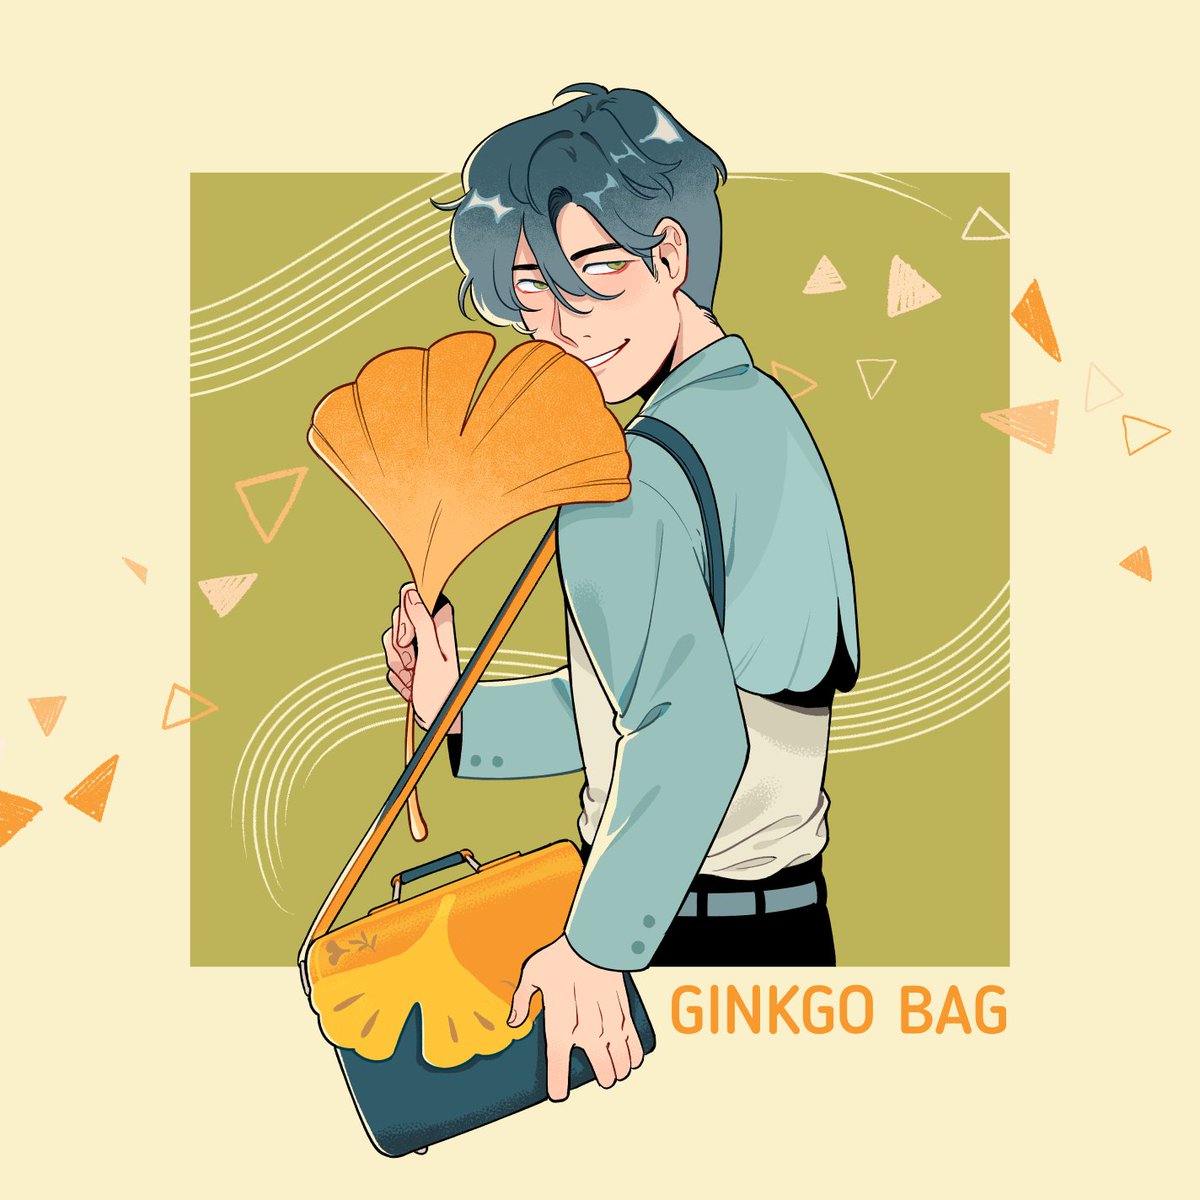 「Ginkgo bag!」|Chan Chau @ TCAF 2104のイラスト